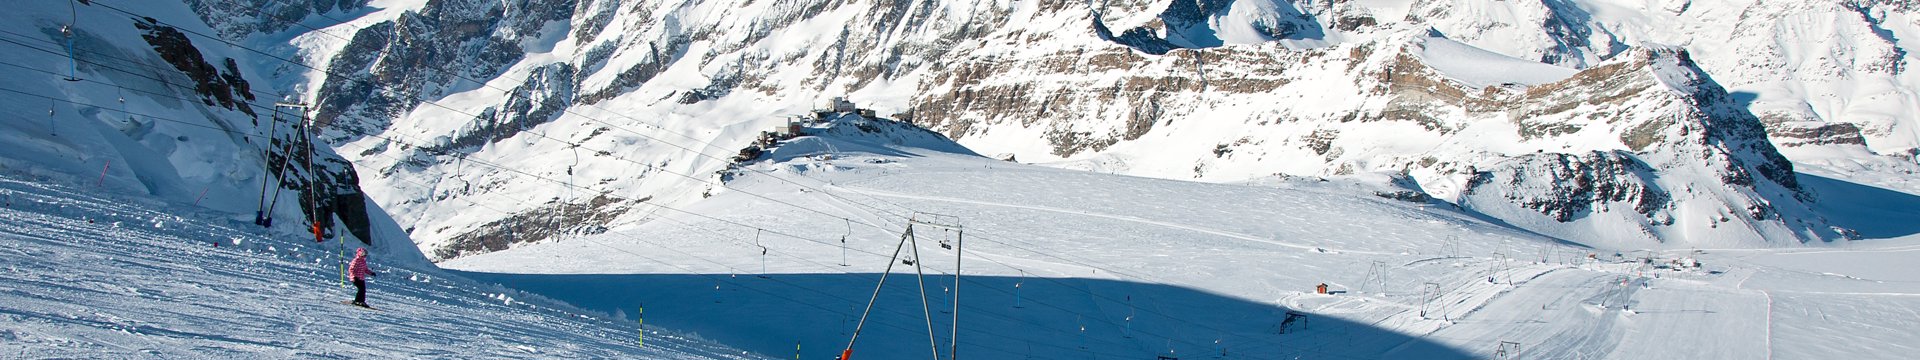 Zermatt-Matterhorn